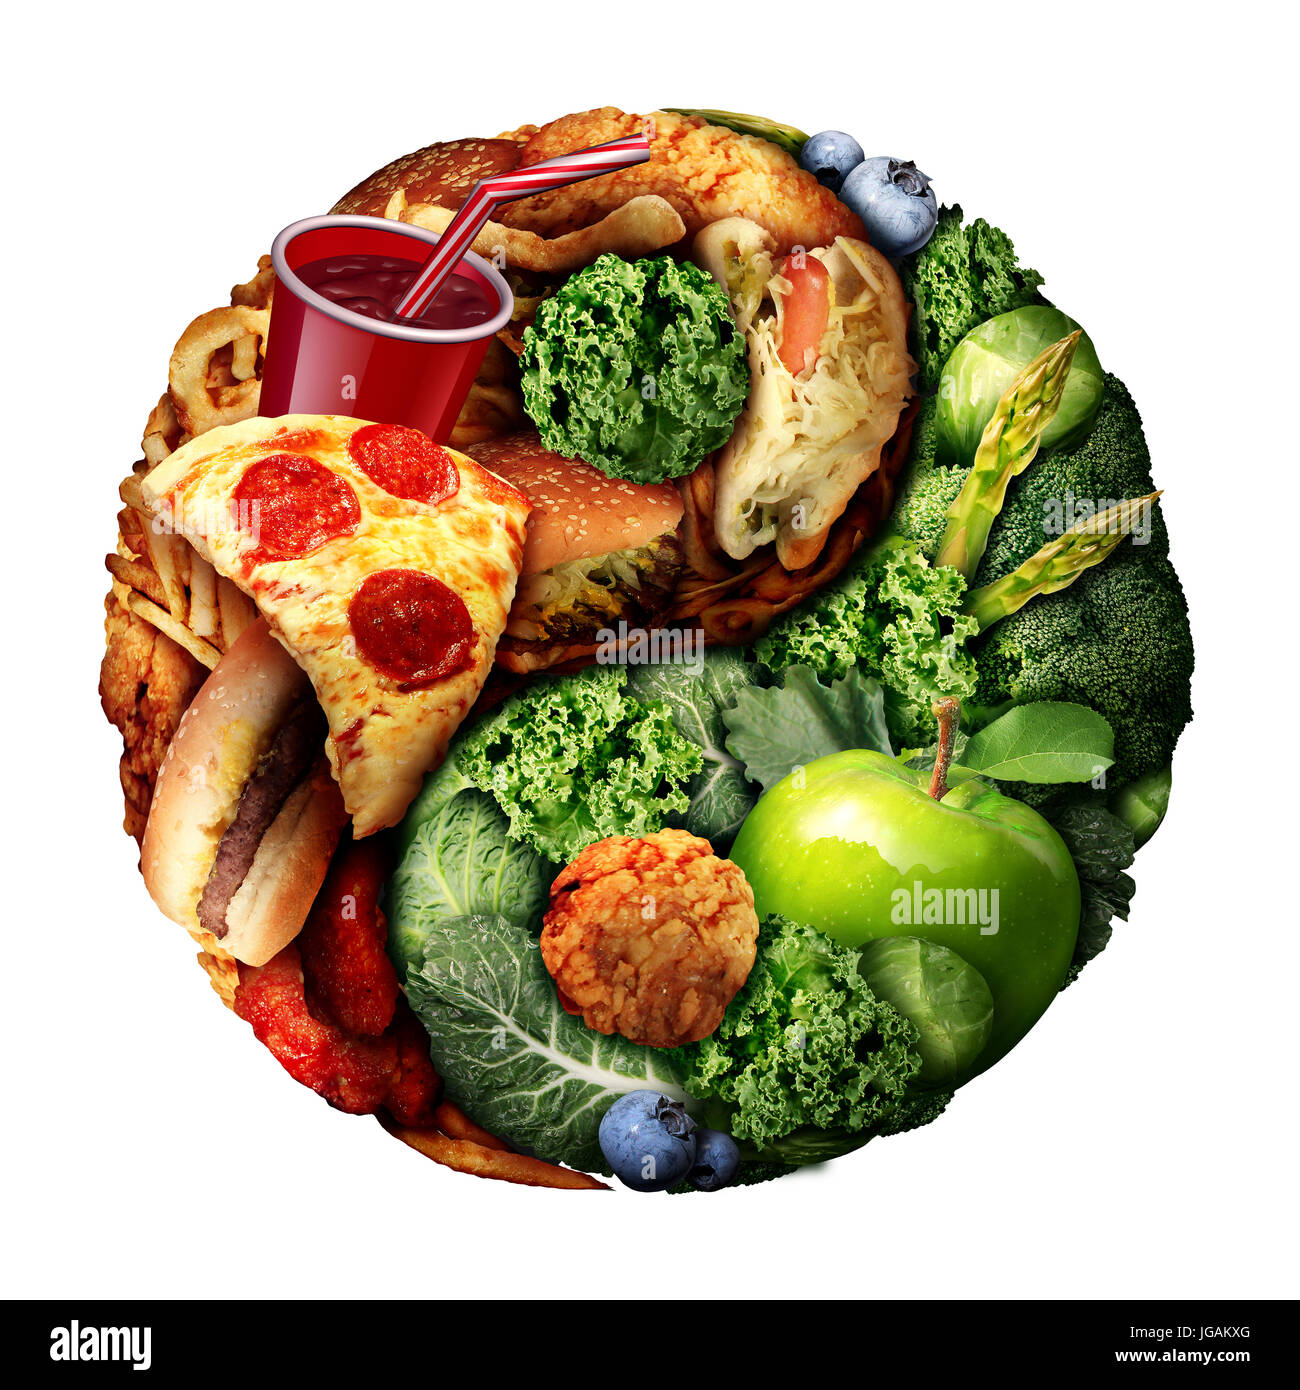 Ernährung und Diät Gleichgewicht als eine Wahl zwischen gute grüne Naturkost und ungesunde verarbeitete Snacks als Ying und Yang Symbol geprägt. Stockfoto